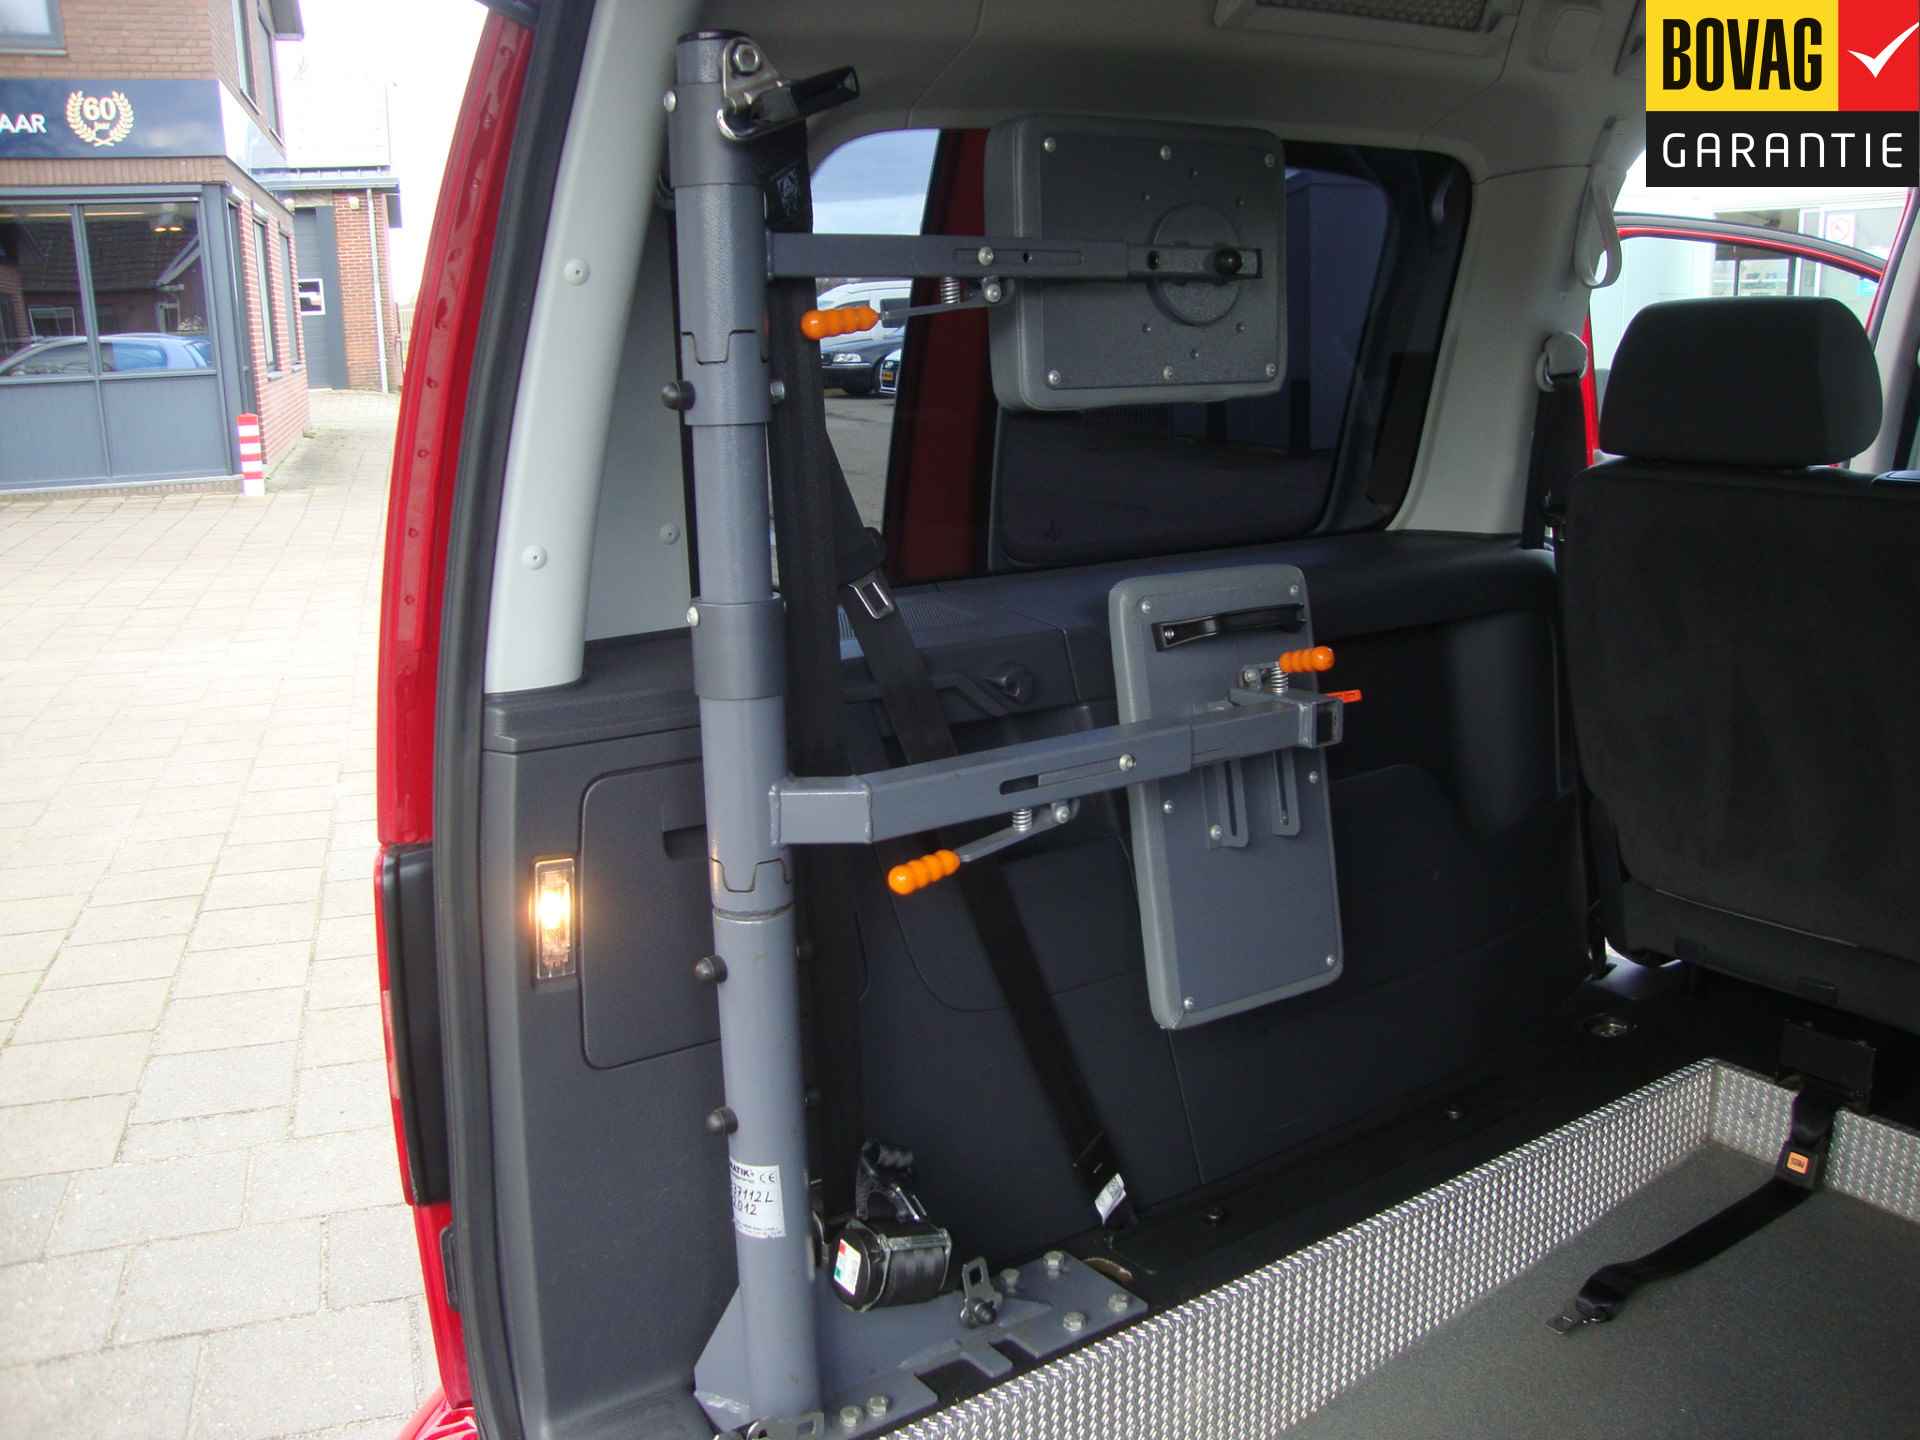 Volkswagen Caddy Maxi 1.2 TSI Trendline Rolstoel / Invalide , 5 pers + 1 rolstoelplaats( Airco,Cruise Control) RIJKLAARPRIJS! - 33/47